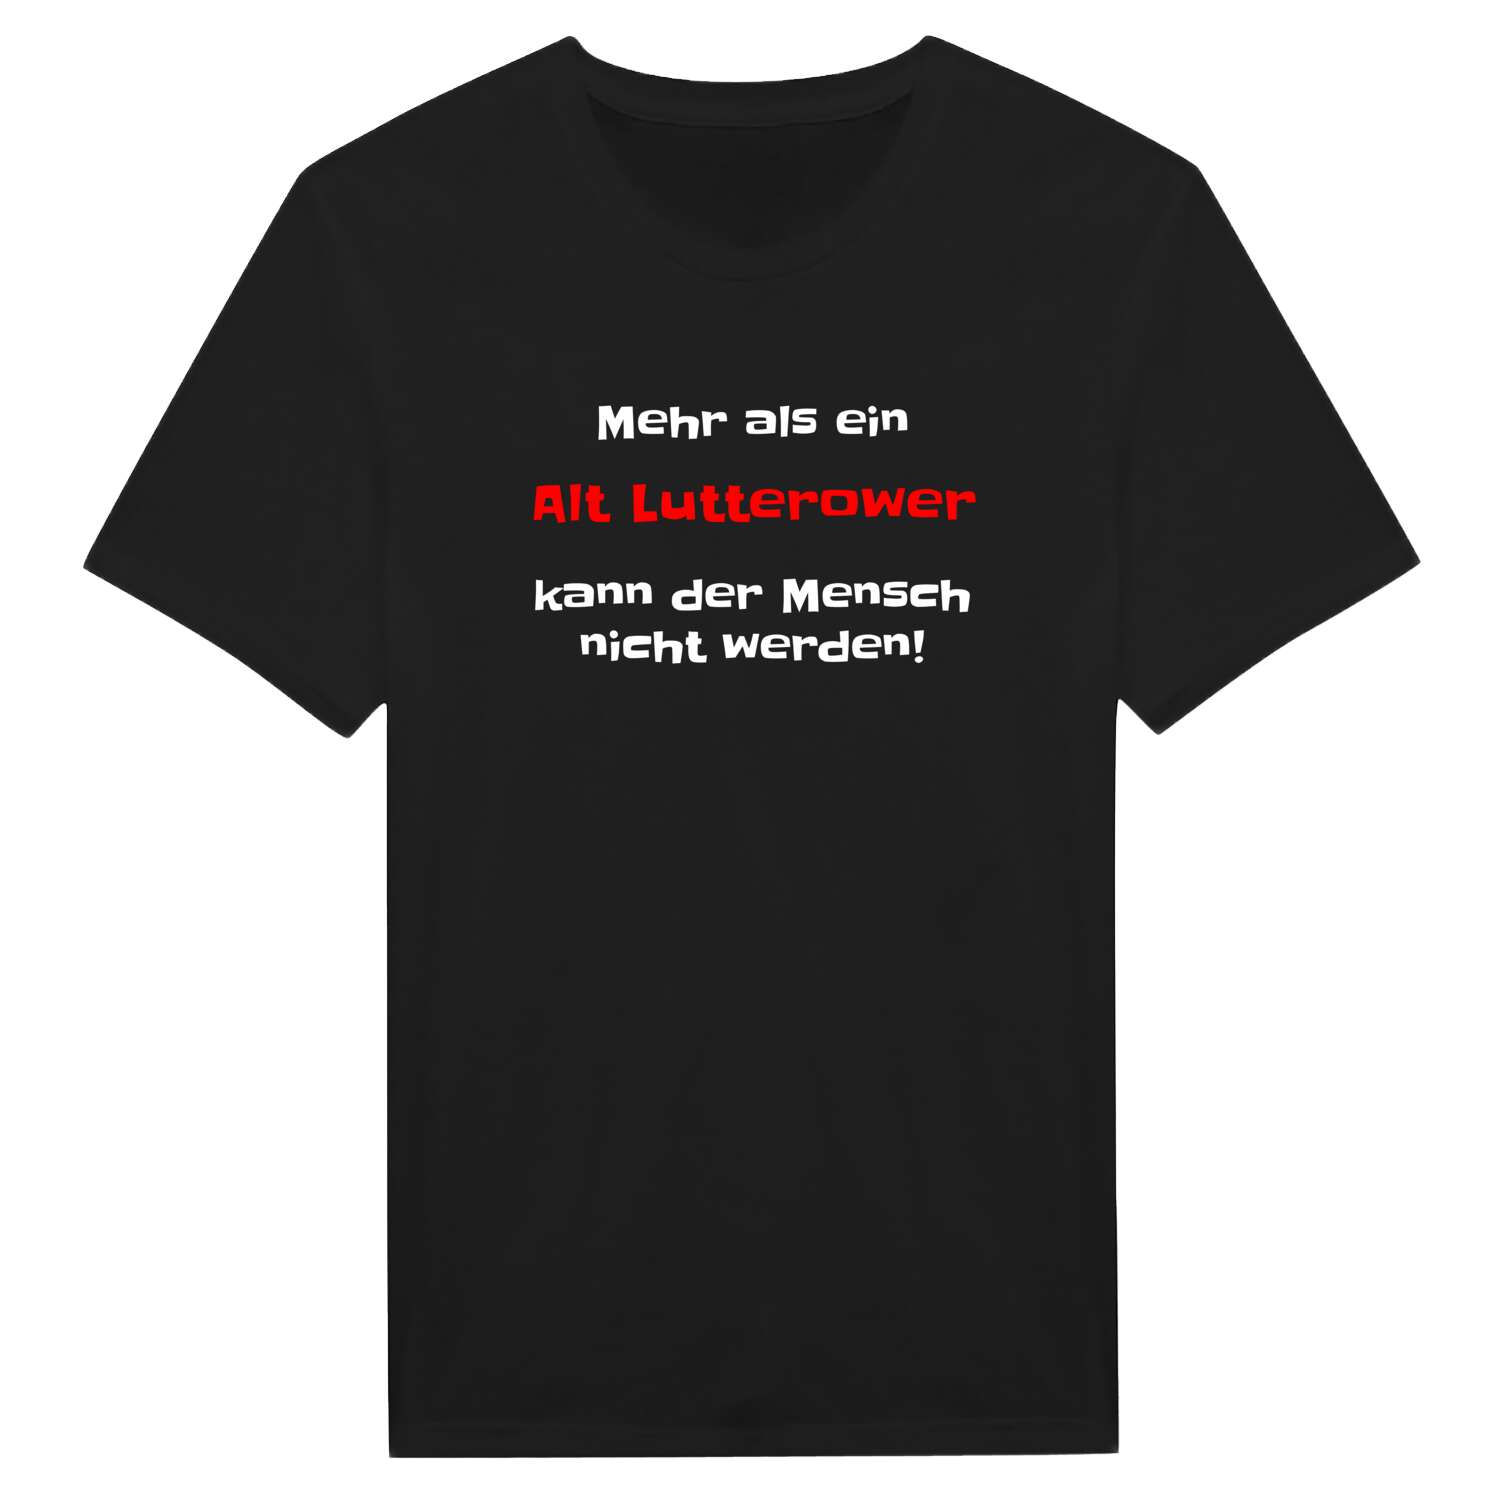 Alt Lutterow T-Shirt »Mehr als ein«